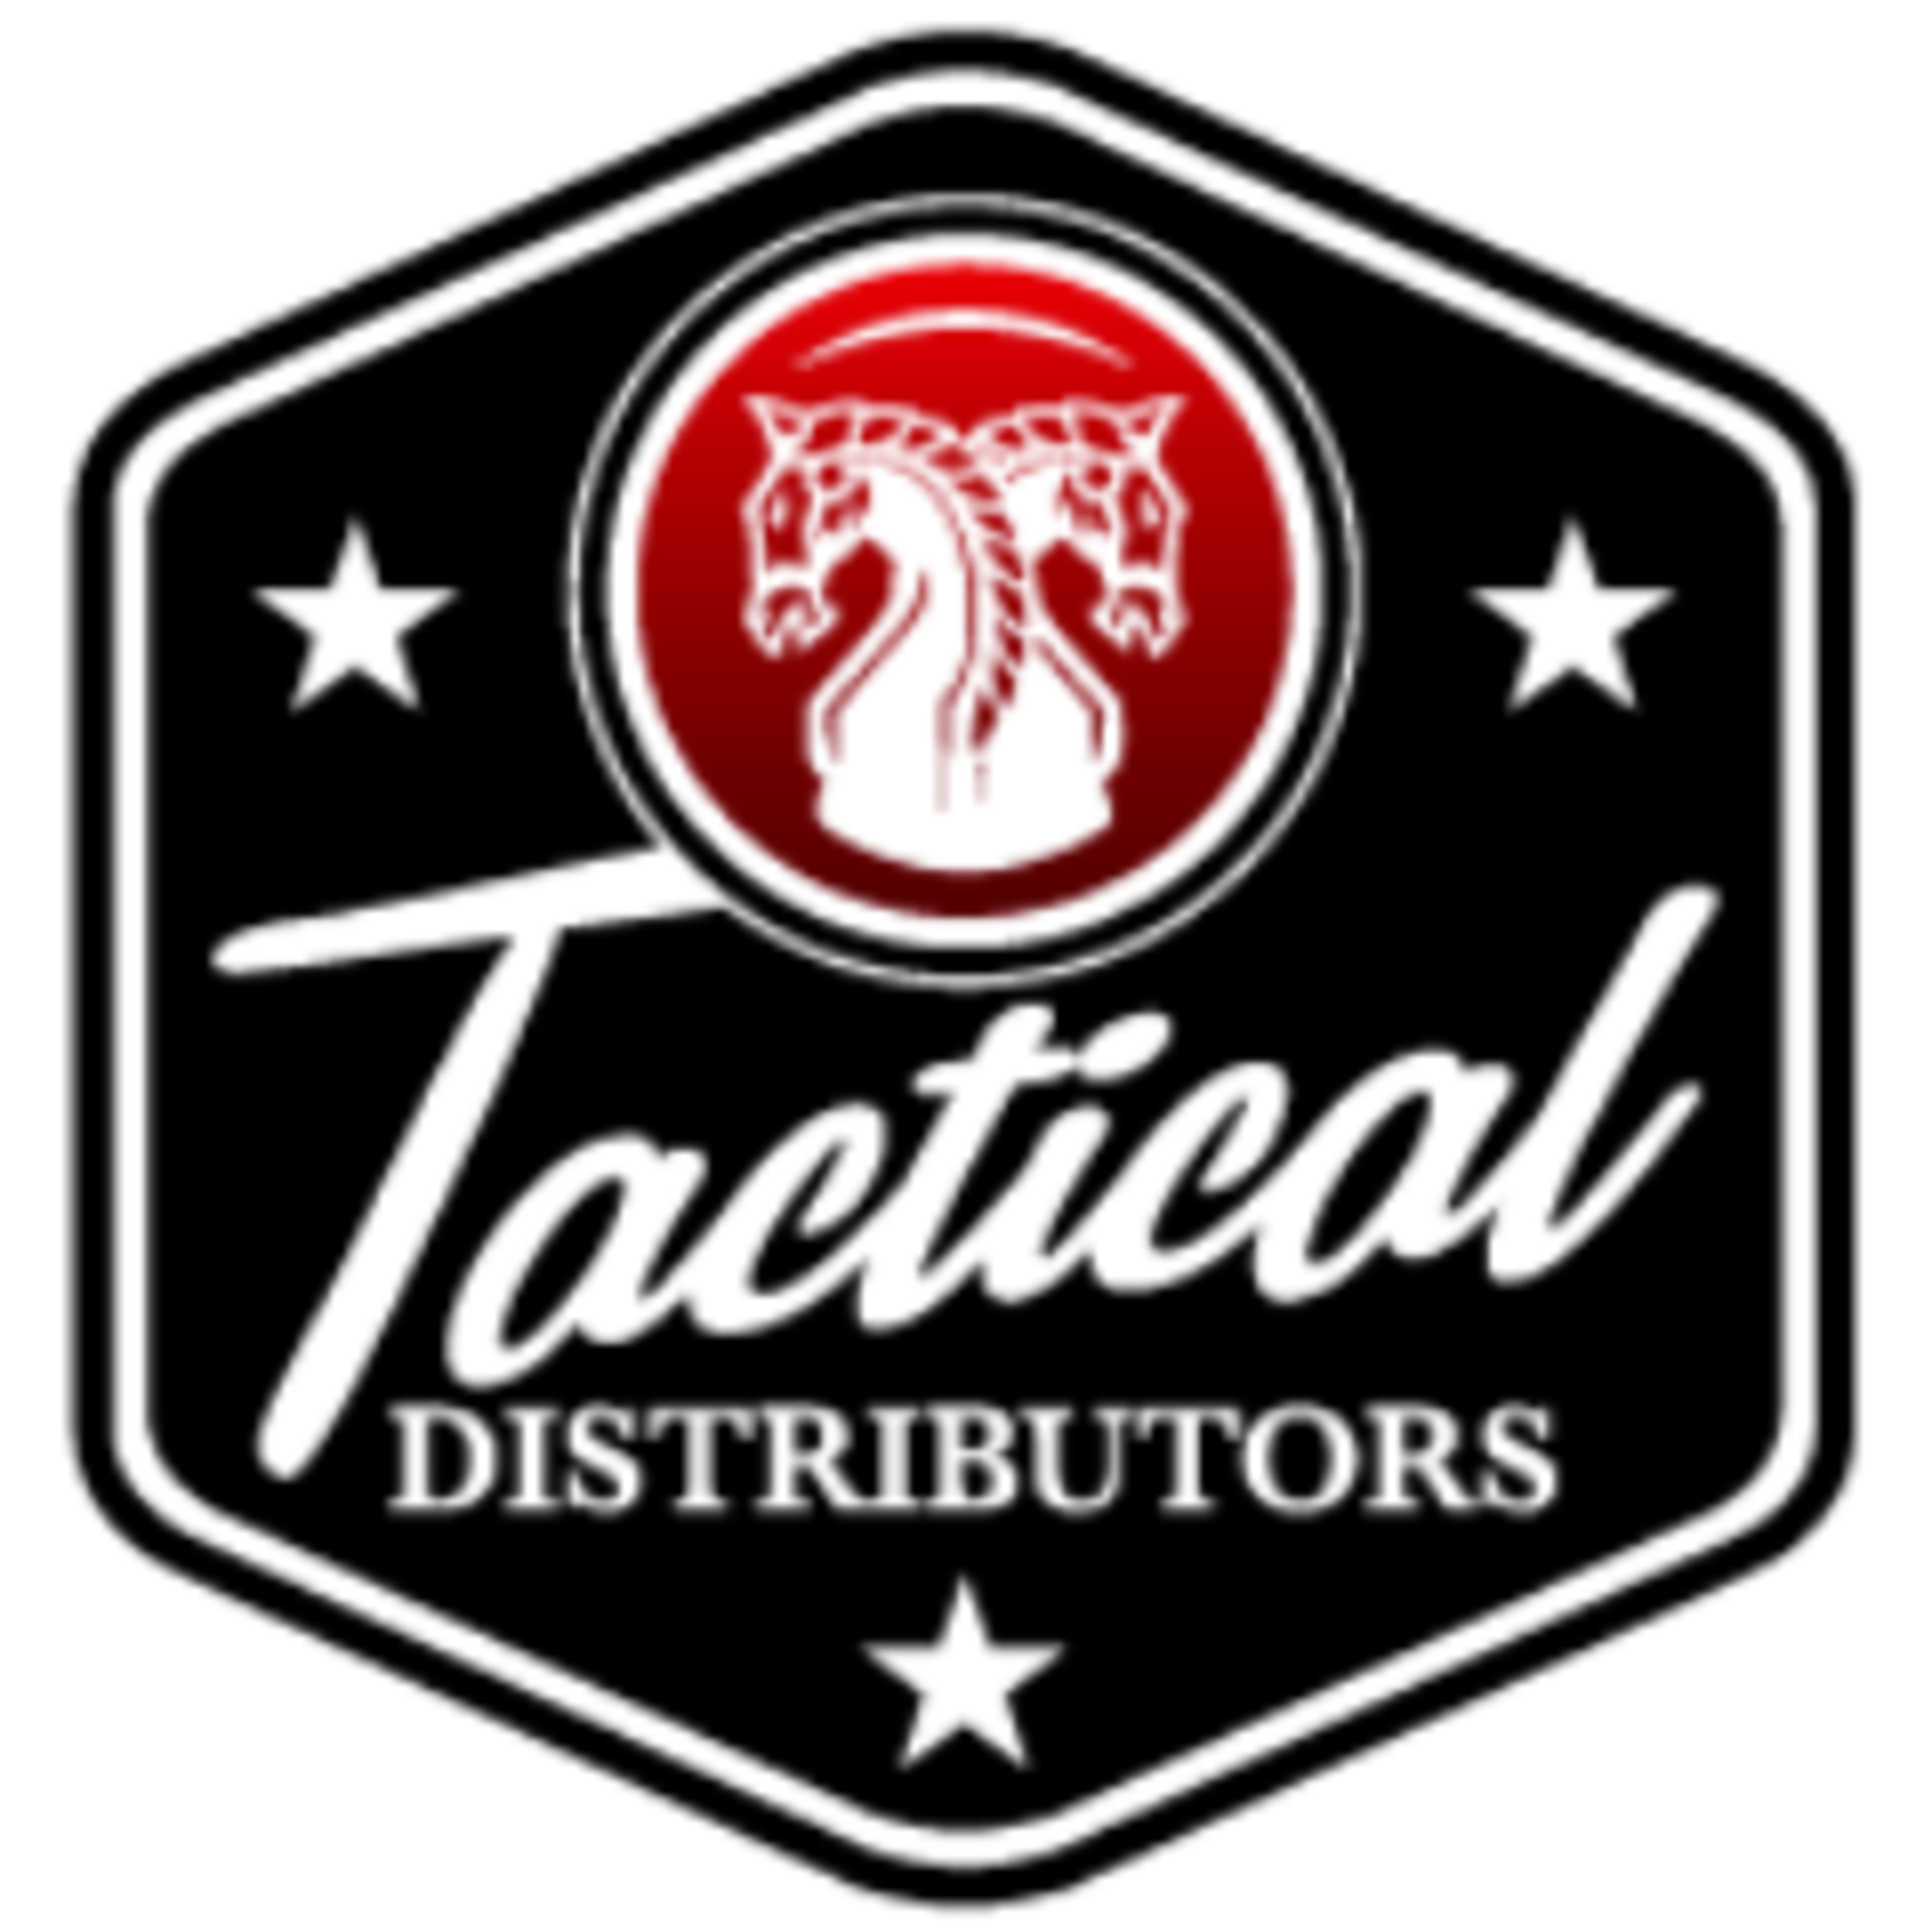 Tactical Distributors Code